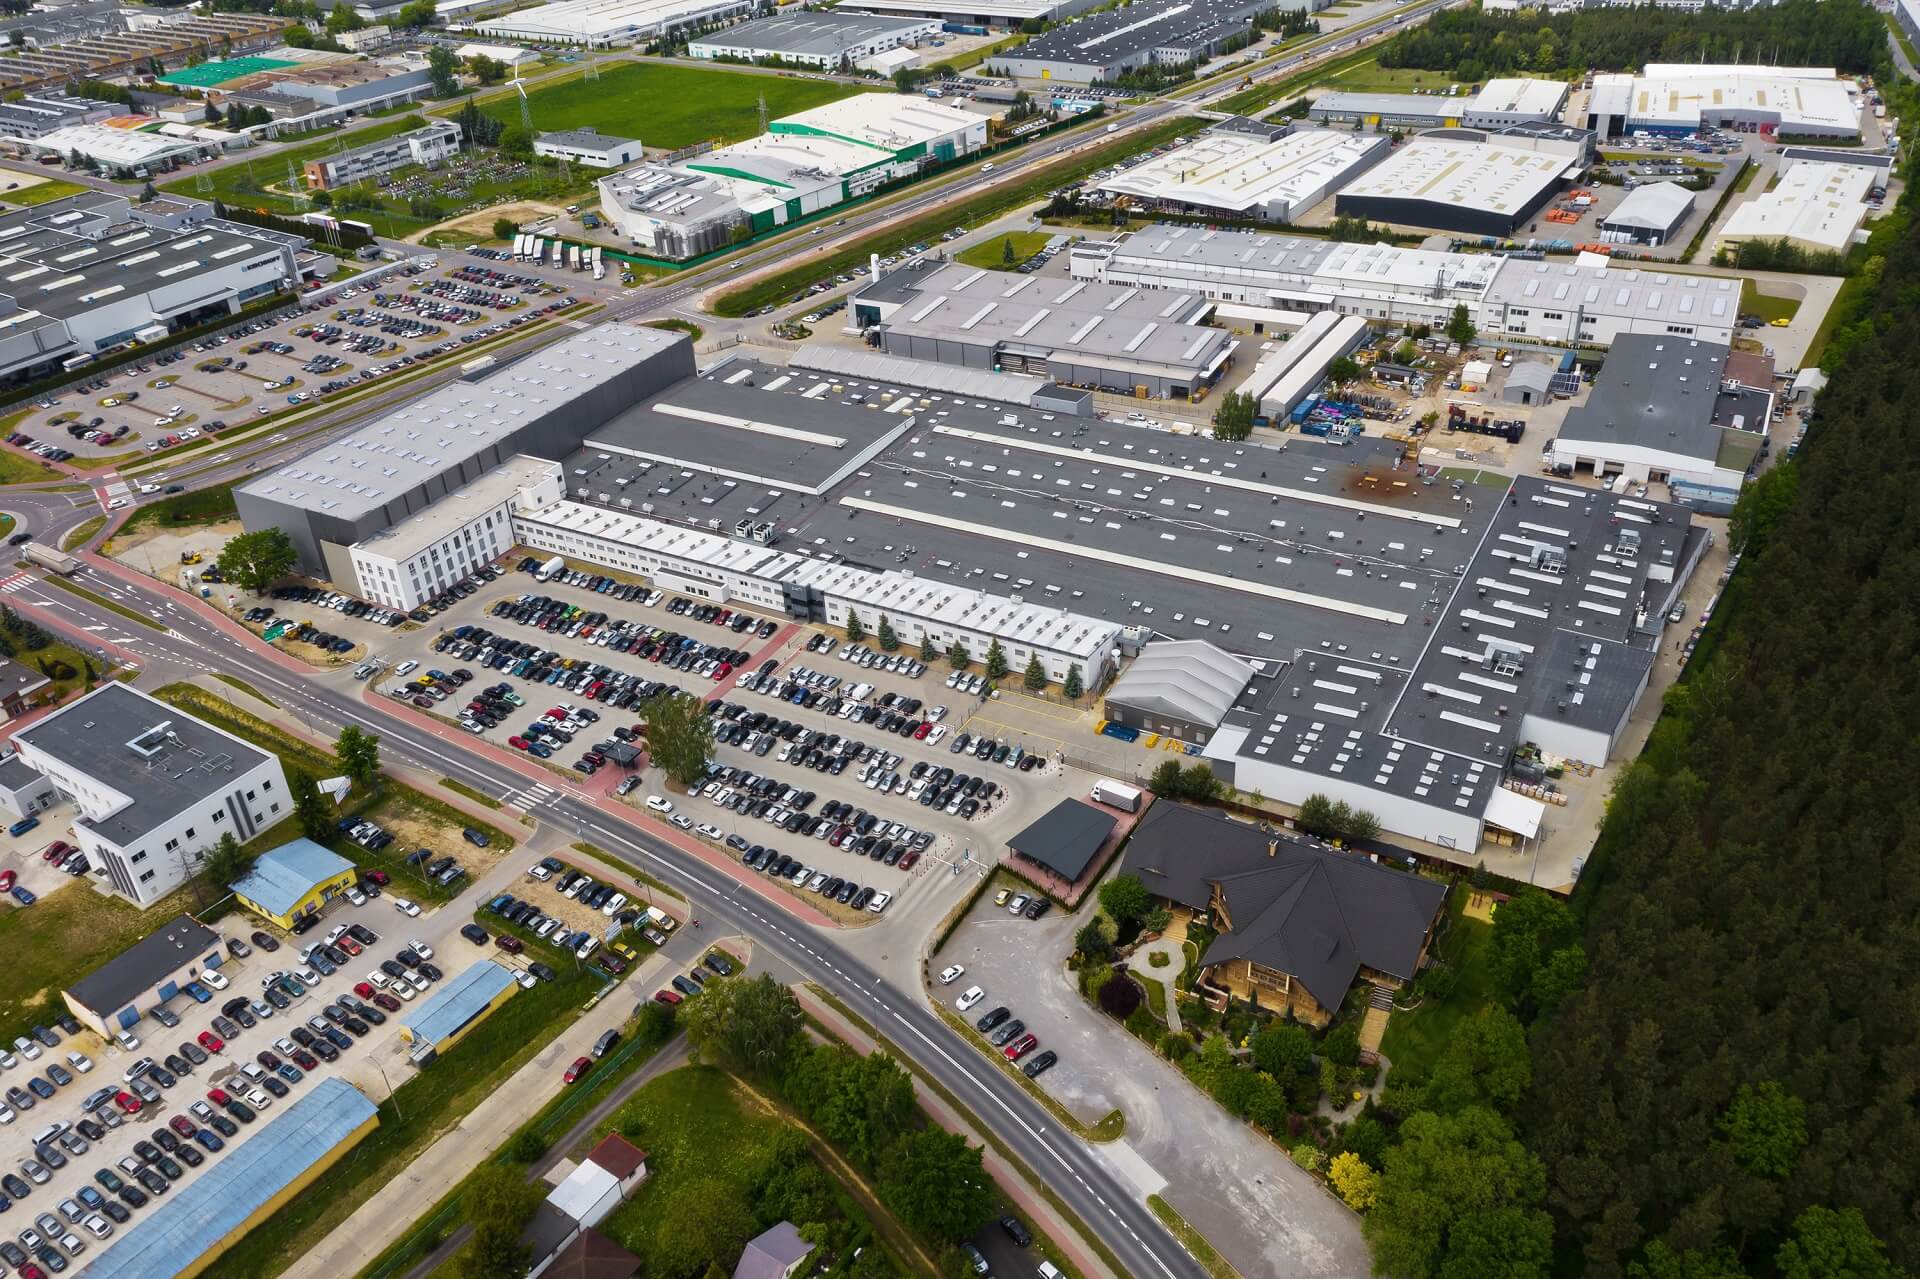 Zdjęcie wykonane z lotu ptaka. Przedstawia rozległe parkingi z autami i hale przemysłowe